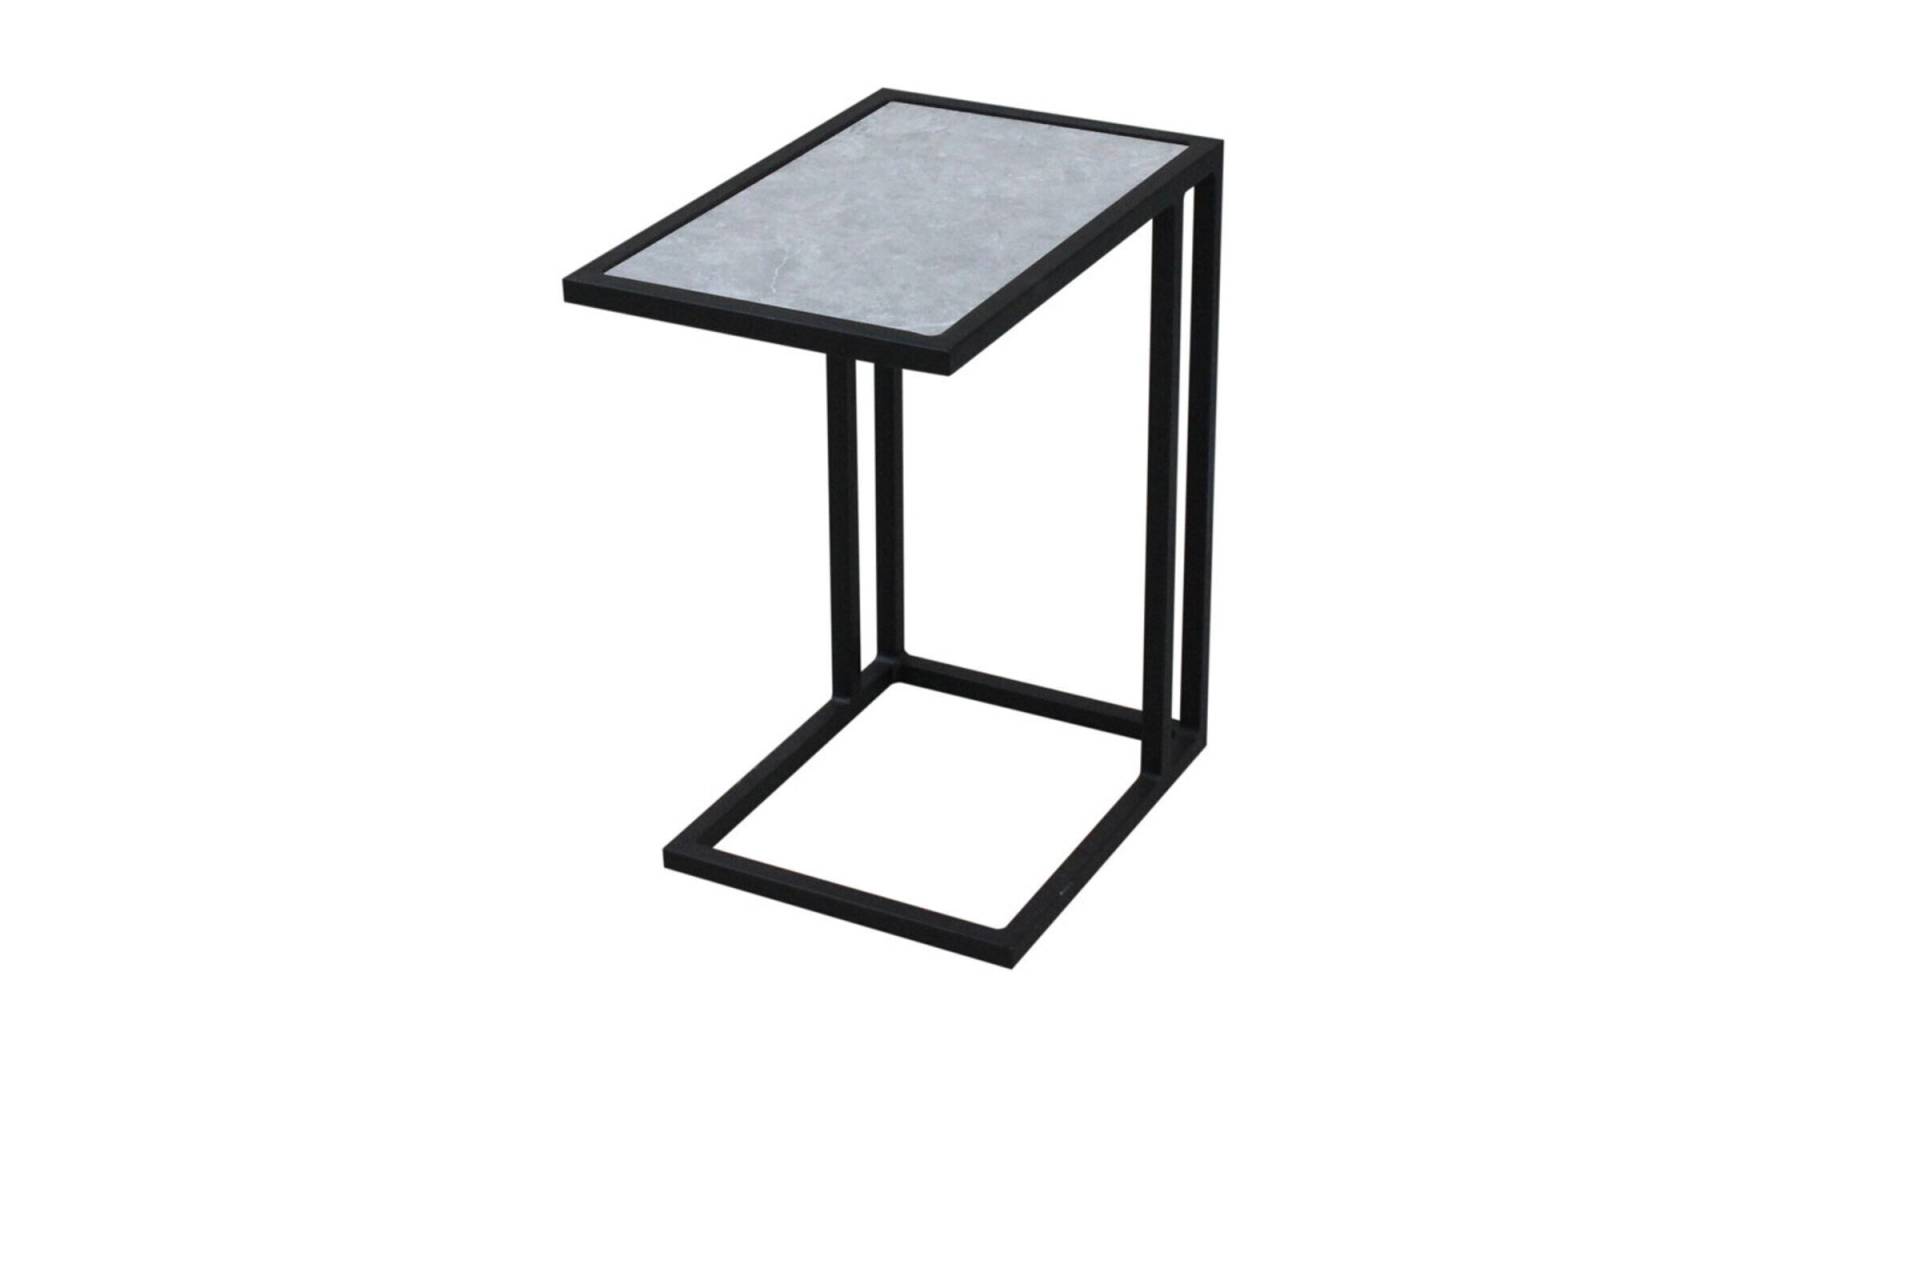 OUTFLEXX Beistelltisch, schwarz, Aluminium, 32 x 48 x 54 cm, perfekt für Lounges, Keramiktischplatte von OUTFLEXX